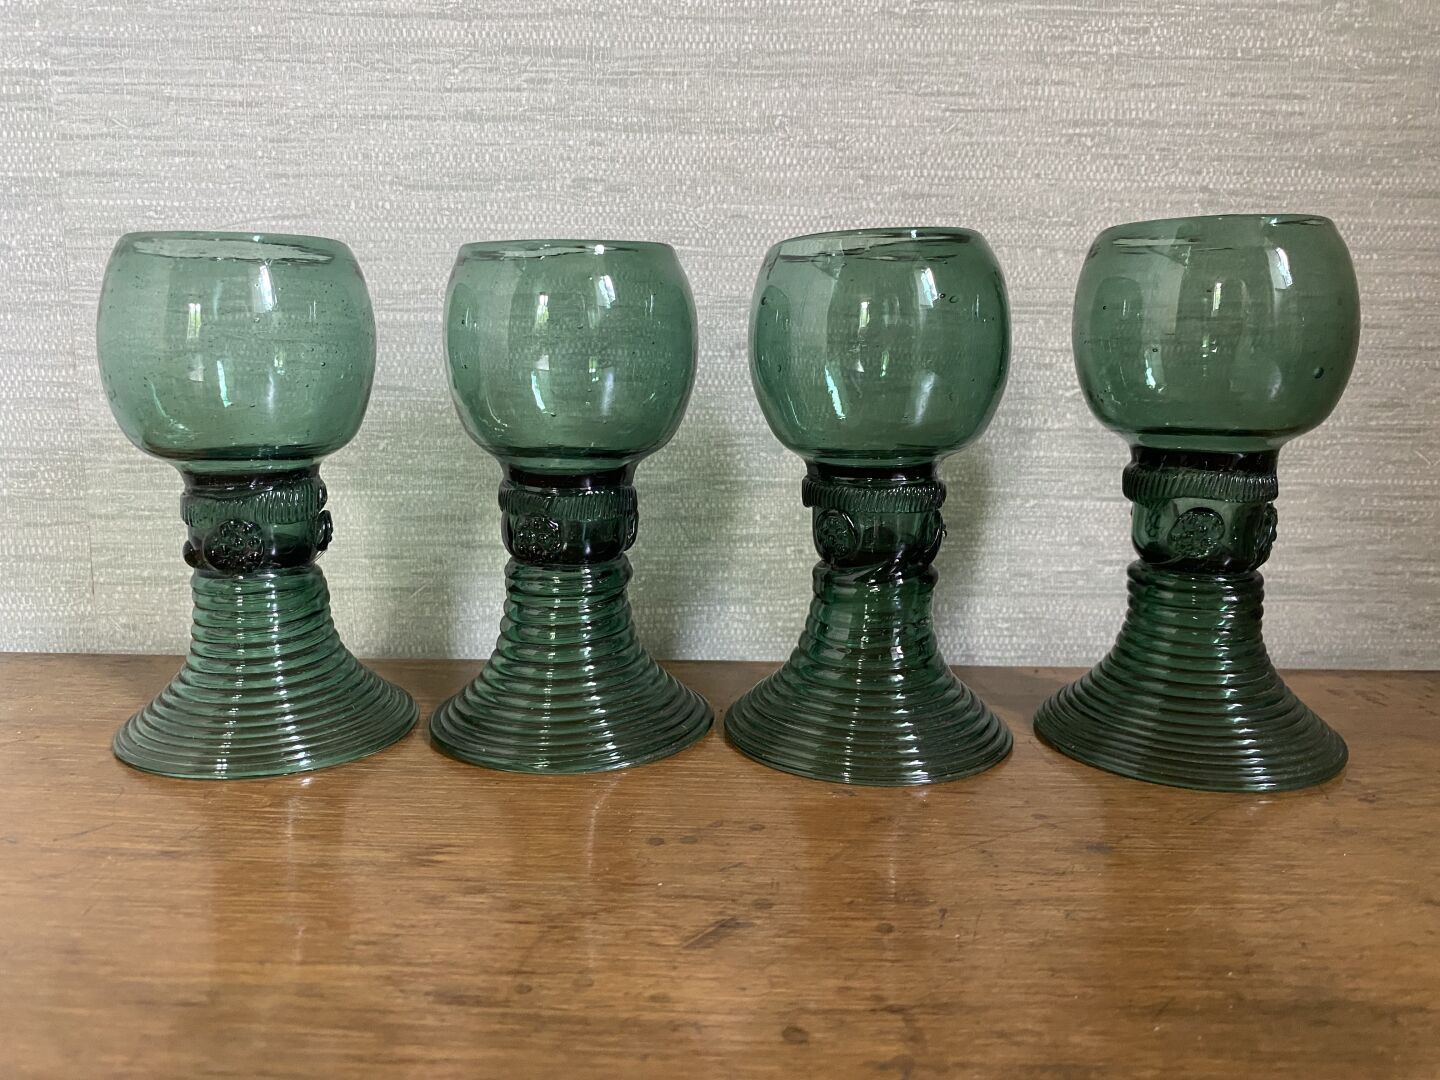 Null 一套九只莱茵河酒杯，绿色着色的吹制玻璃，杯柄上装饰着形成葡萄串的贴花，杯底是郁金香形状。

高12.5厘米



附上另一个模型的三个杯子